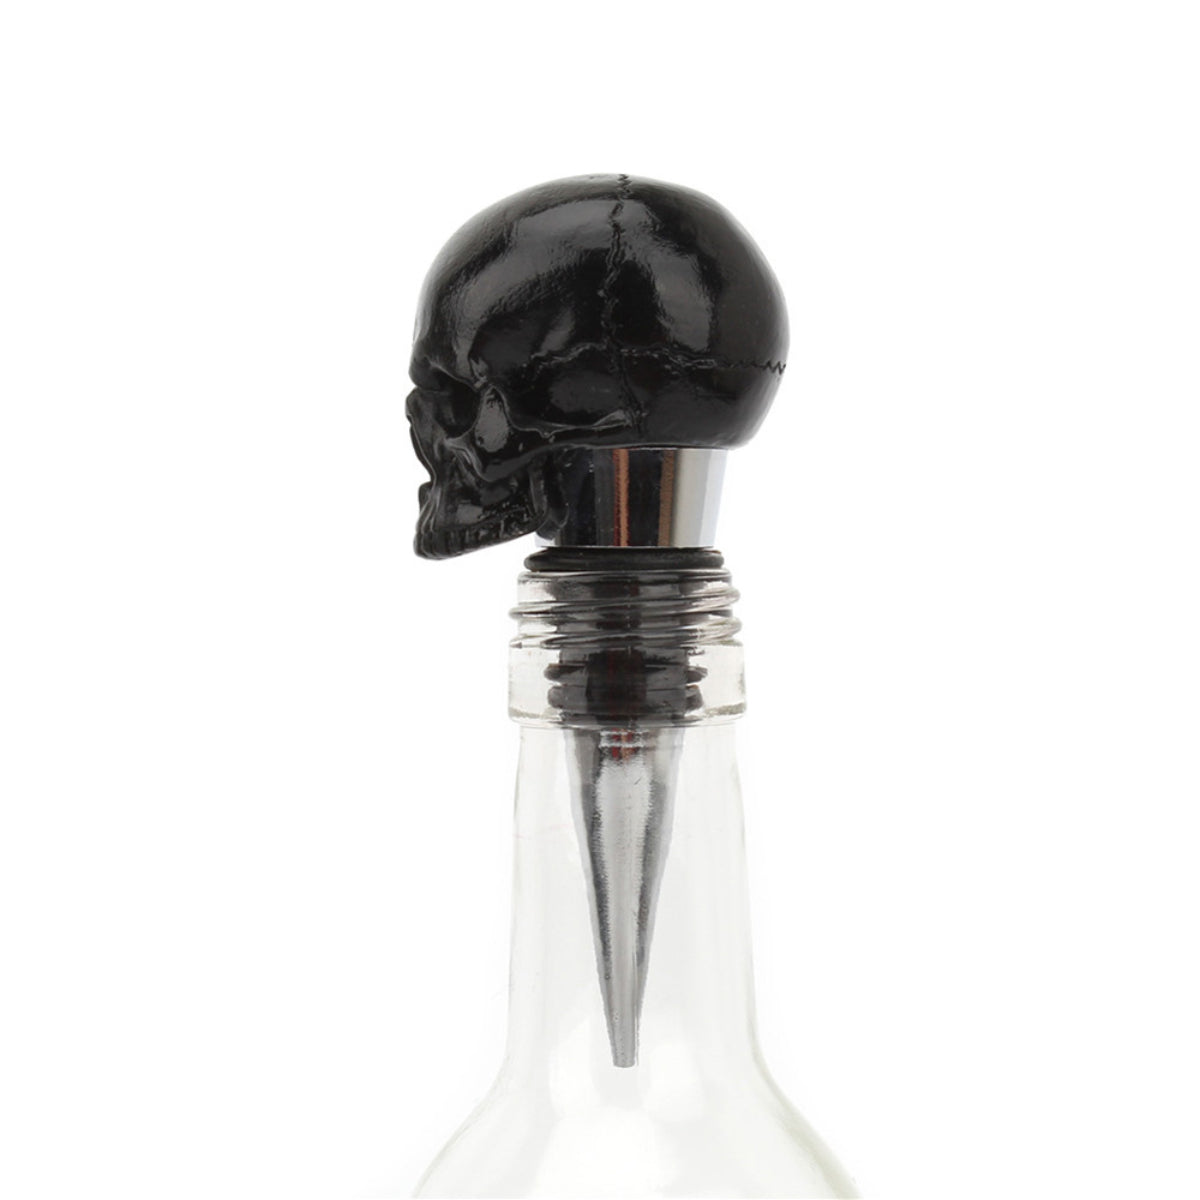 Ro Rox Gothic Black Skull Head Wine Bottle Stopper Cocktail Bar